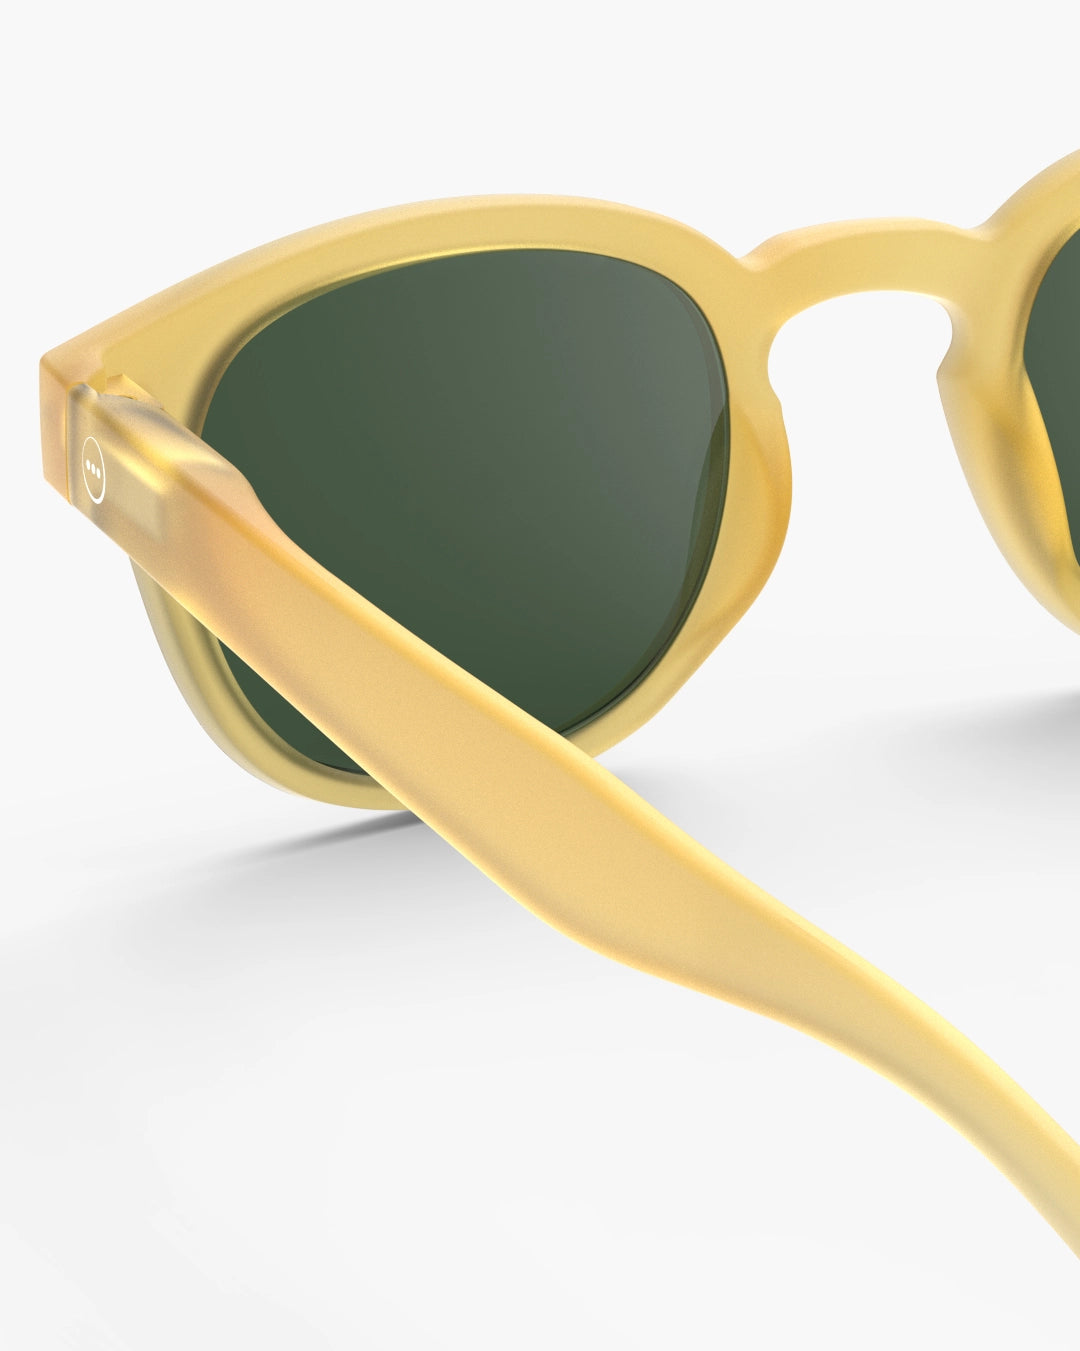 #C Sunglasses - Yellow Honey